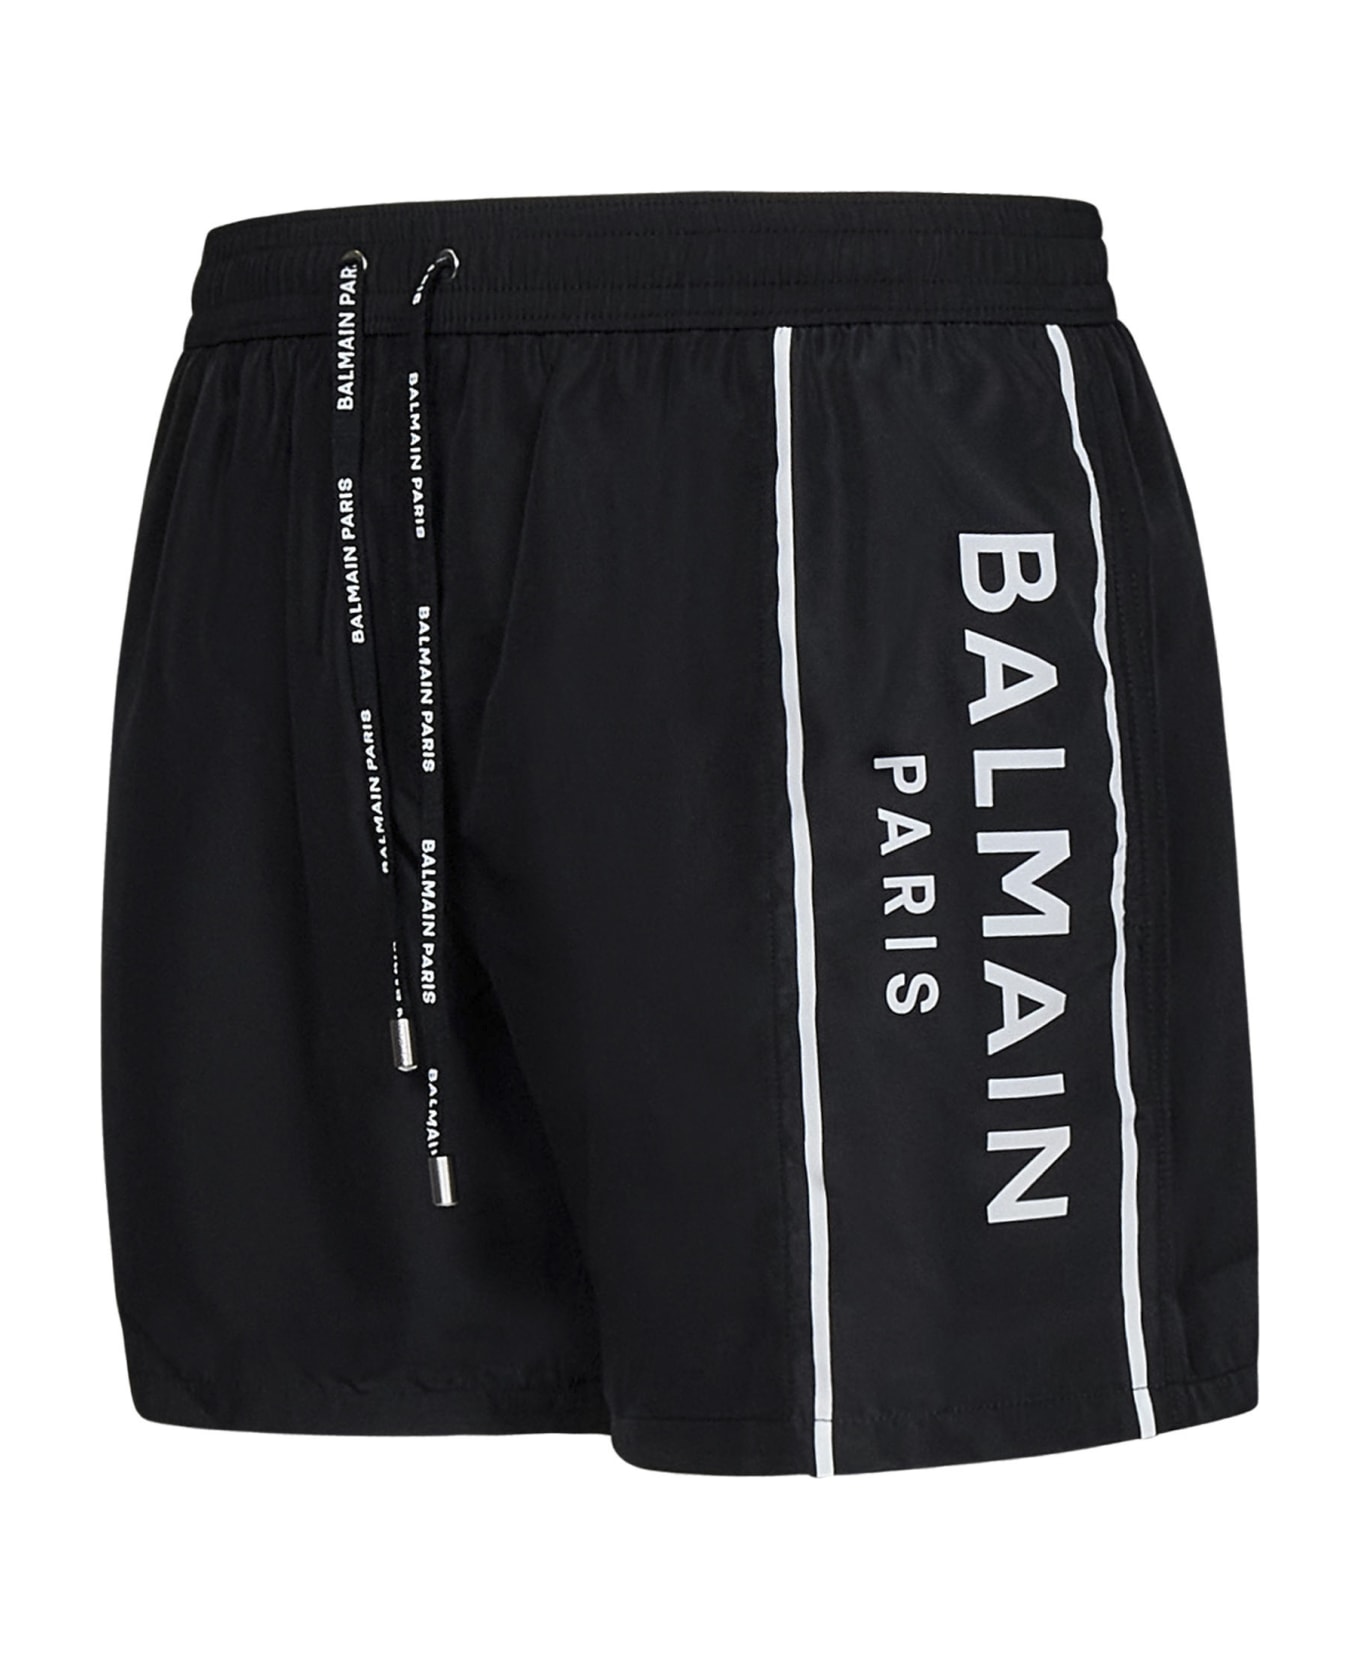 Balmain Swimsuit - Black スイムトランクス